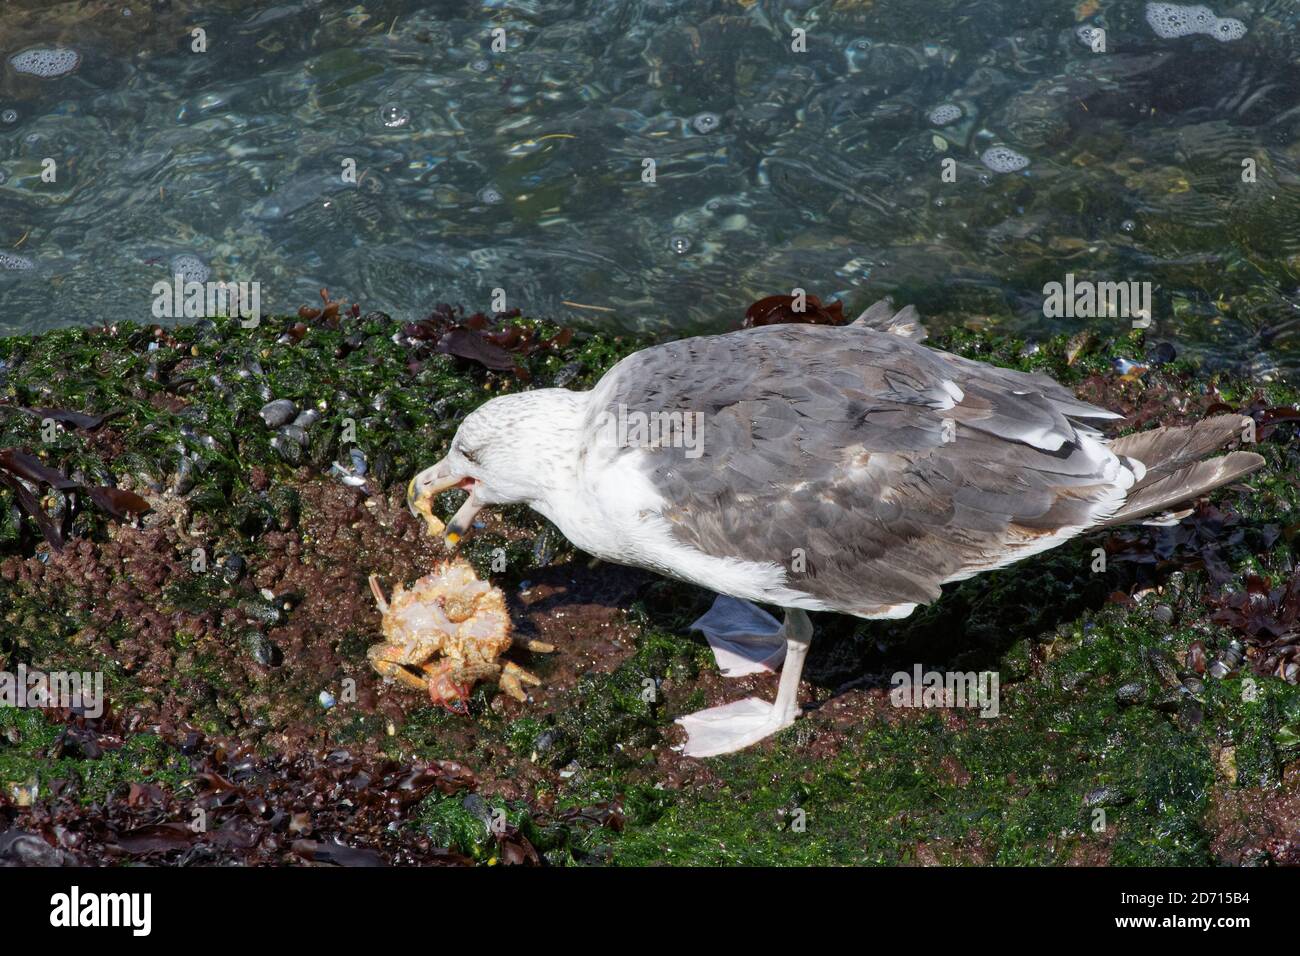 Grande gabbiano nero-backed (Larus marinus) alimentazione subadulta su un granchio ragno spinoso (Maja squinado) ha appena catturato su una bassa marea, Galles, Regno Unito. Foto Stock